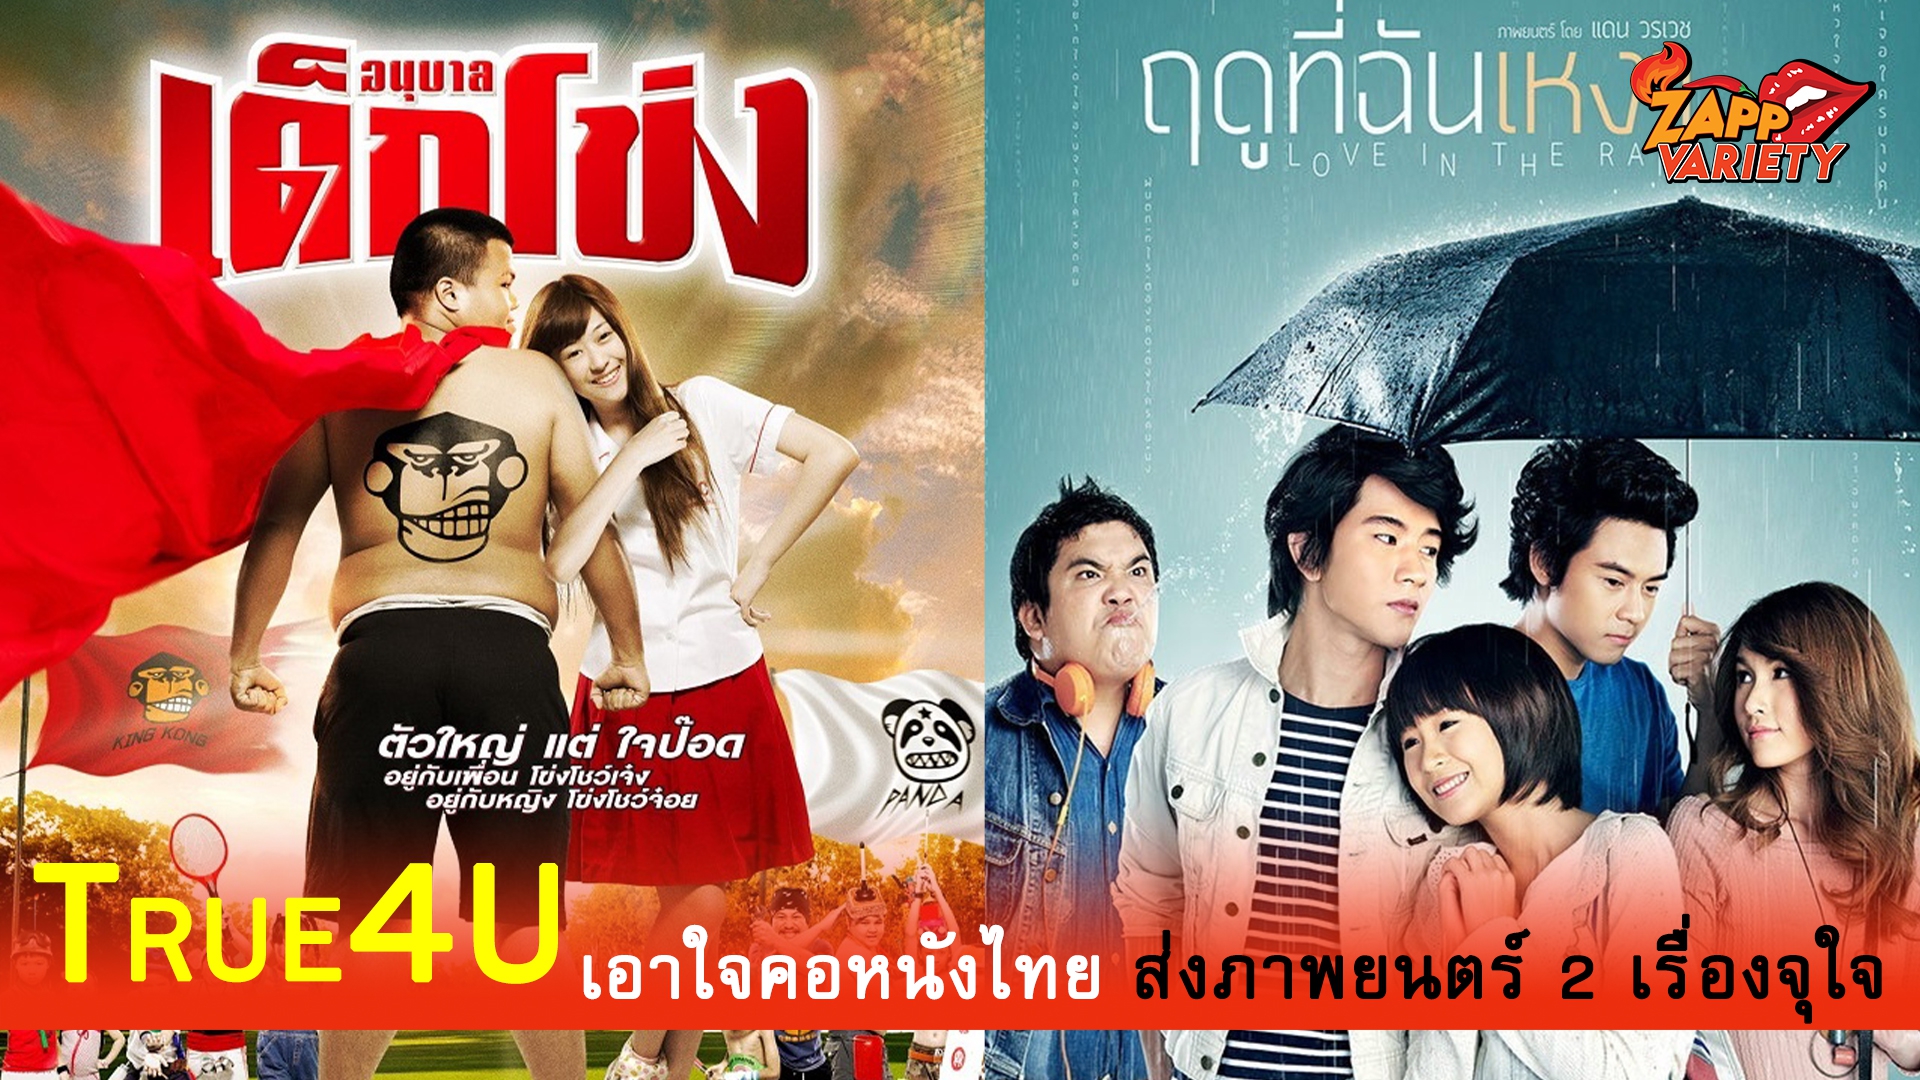 ทรูโฟร์ยู ช่อง 24 เอาใจคอหนังไทยส่งภาพยนตร์ “ฤดูที่ฉันเหงา” และ “อนุบาลเด็กโข่ง” ให้ชมกันแบบจุใจ